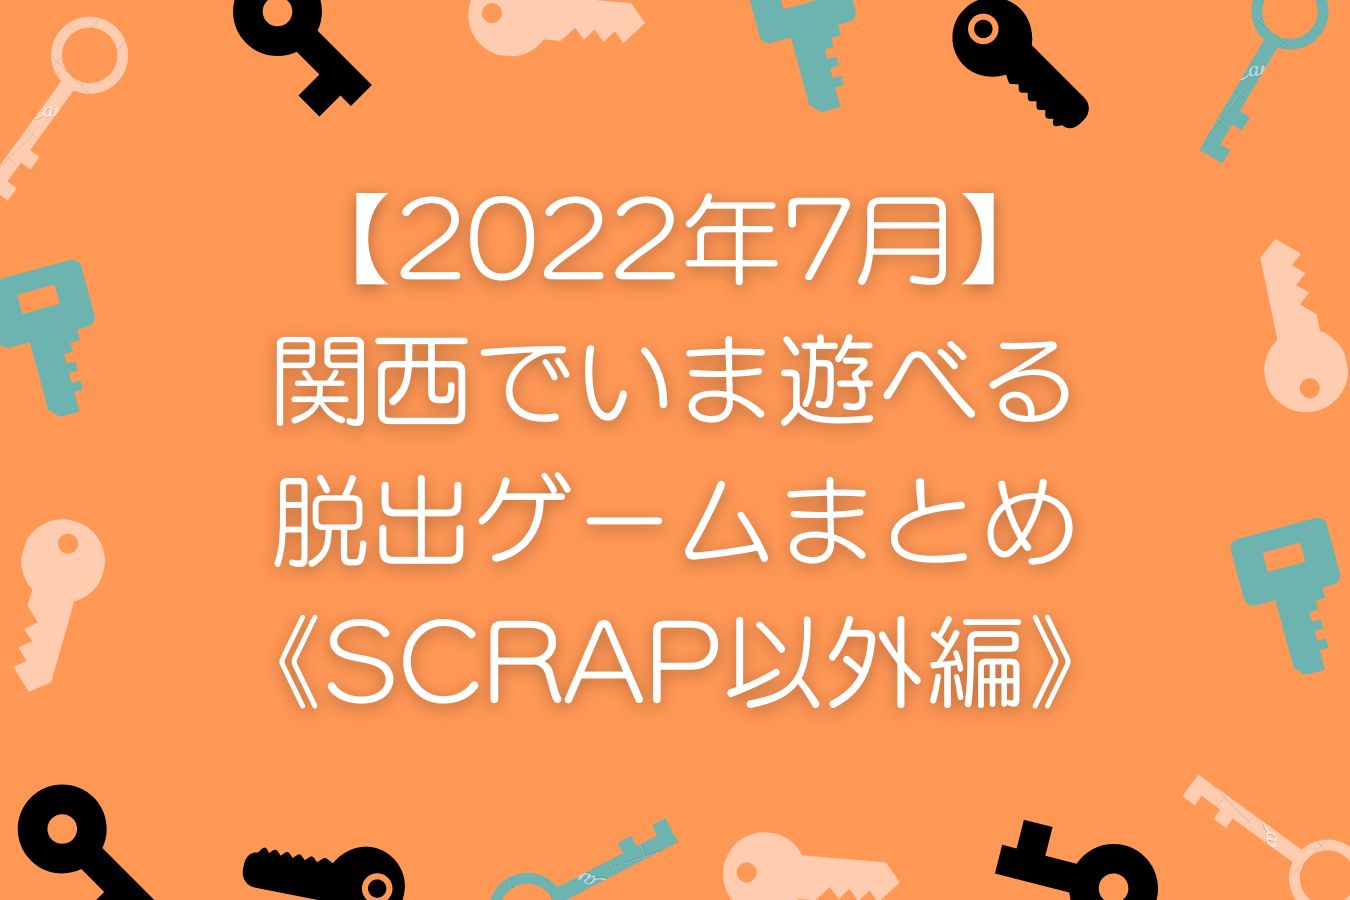 【2022年7月】-関西でいま遊べる-リアル脱出ゲームまとめ-《SCRAP以外編》